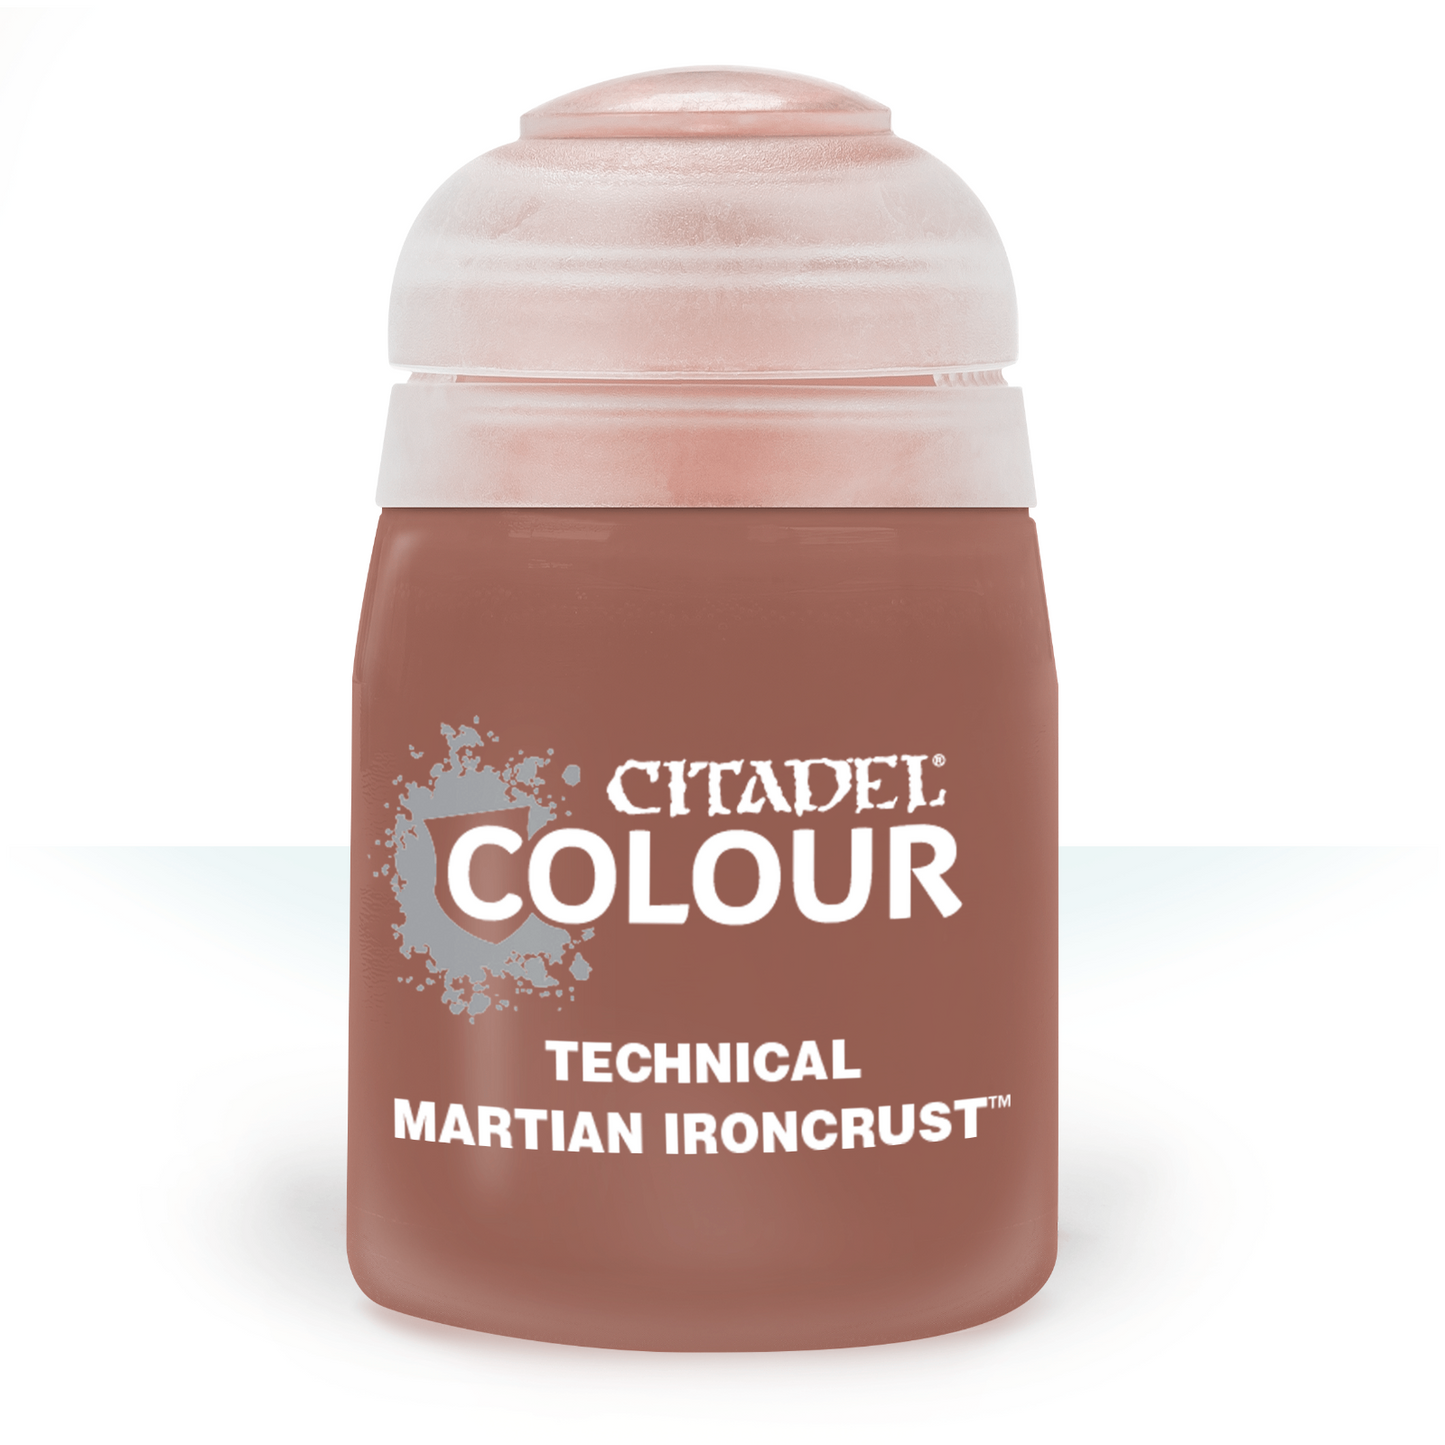 Citadel Colour - Martian Ironcrust Technical Paint